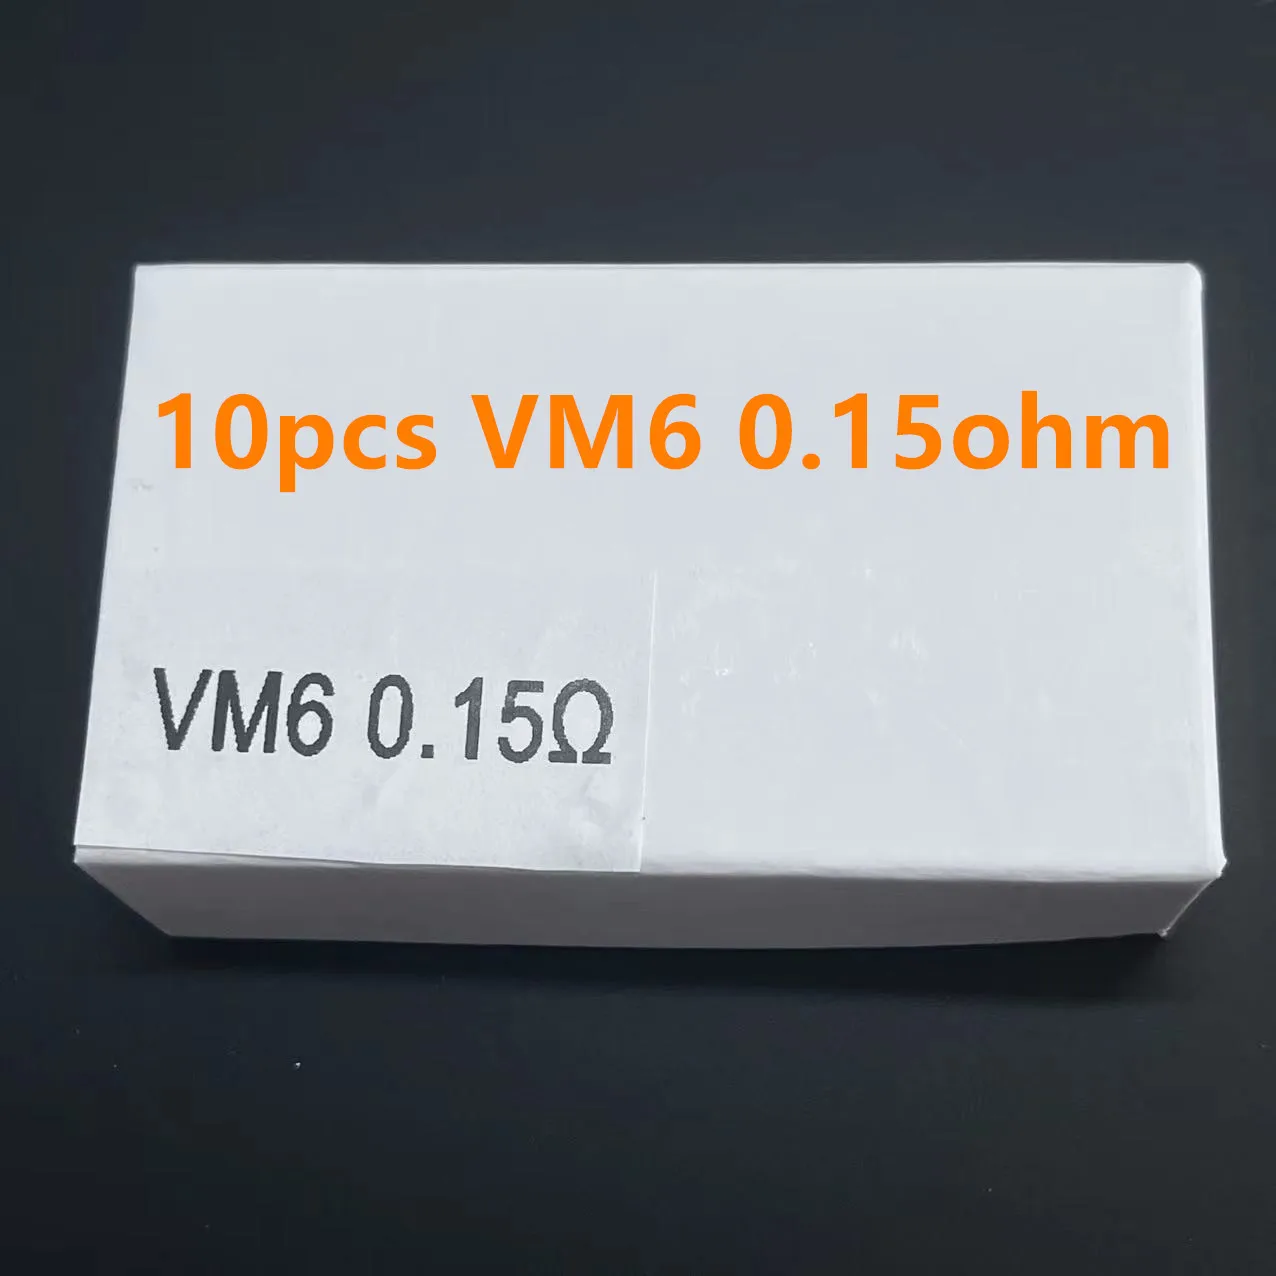 PNP Széria Akaszkodik Munkaeszköz 50/20/10/5PCS VM1 VM5 VM6 számára húzza X 2 S Mali Argosz X Menő GT v.suit vinci R programozási nyelv X VINCI/VINCI R/VINCI X/DRAGS S